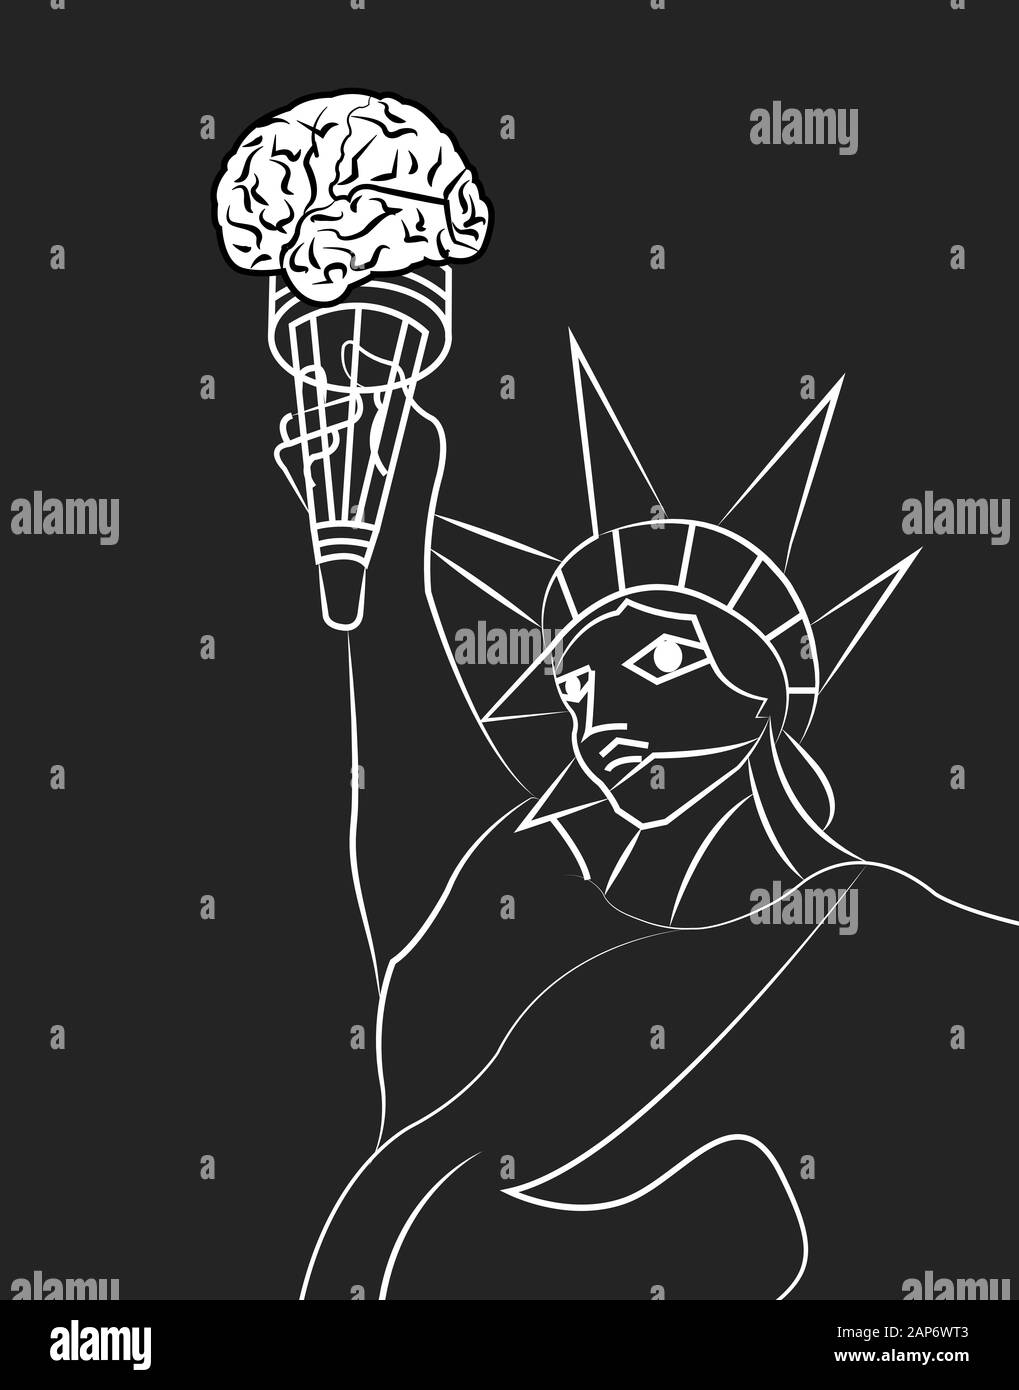 ilustración de la estatua de la libertad con una antorcha con un cerebro como una llama Foto de stock